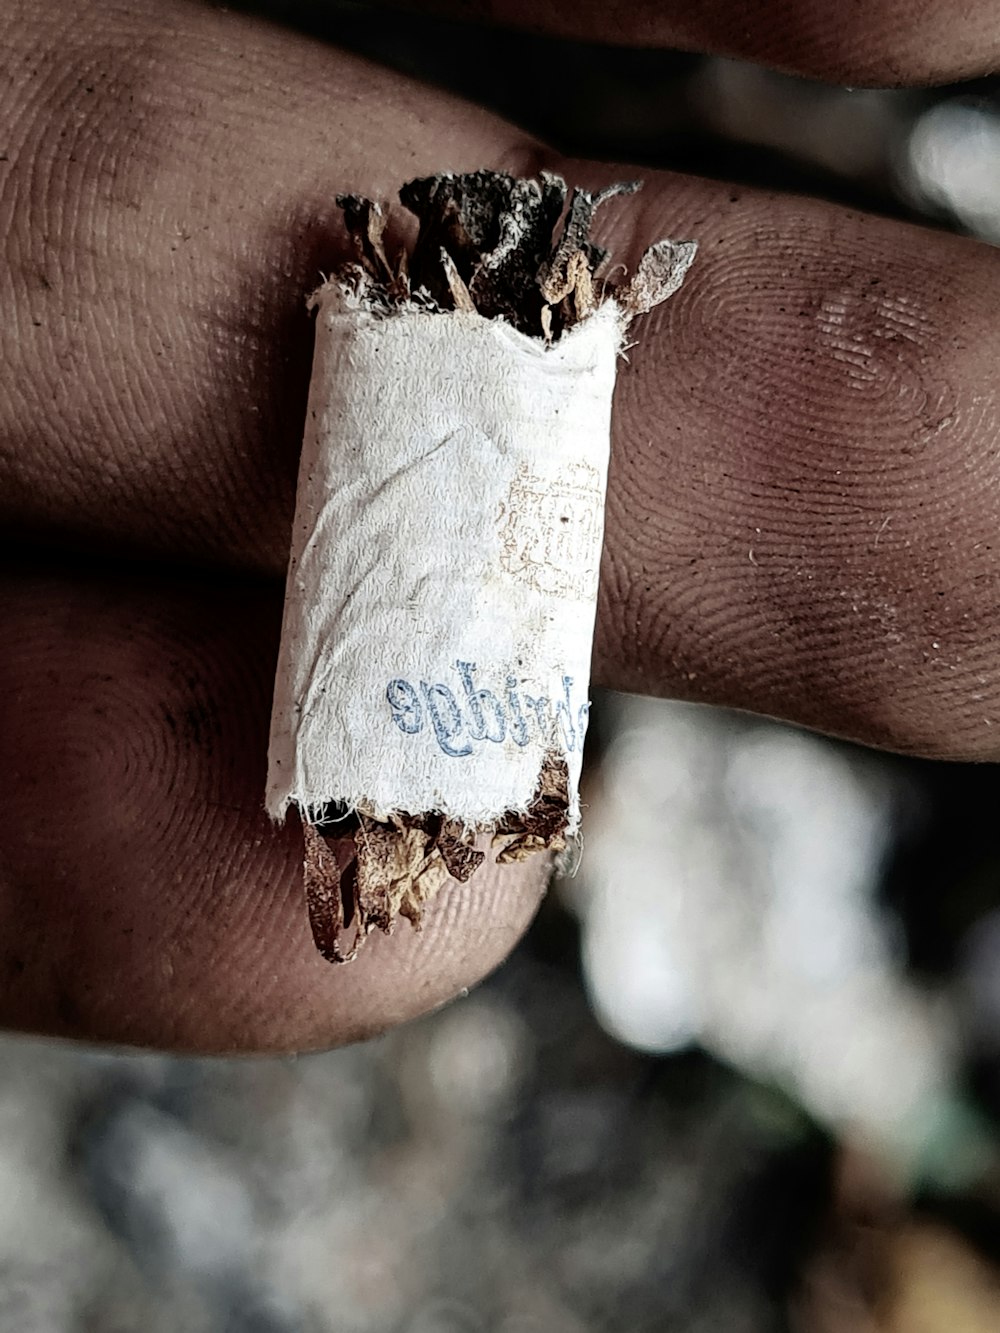 una persona sosteniendo un cigarrillo en la mano